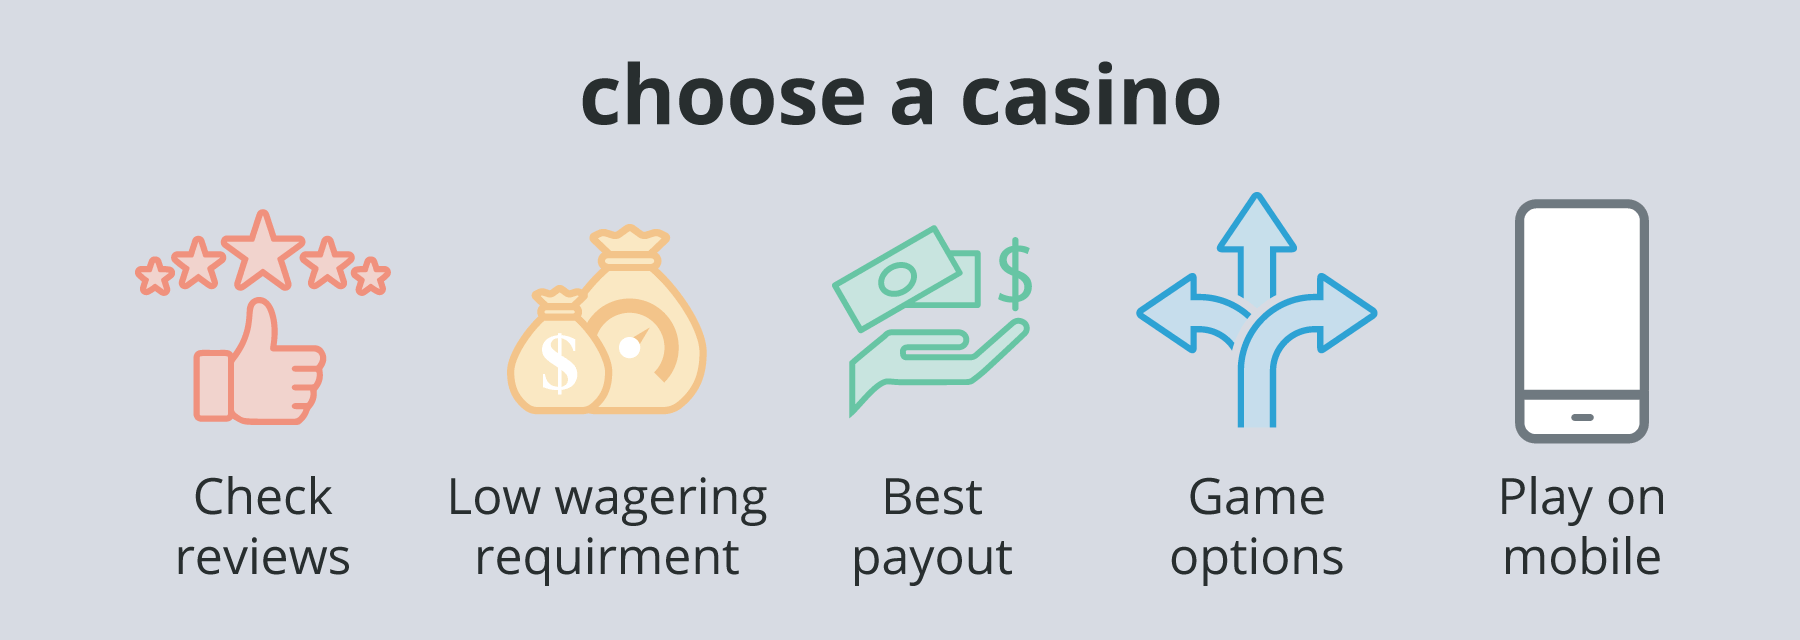 Choose-a-casino - Emirates Casino Online Casino Comparison Guide